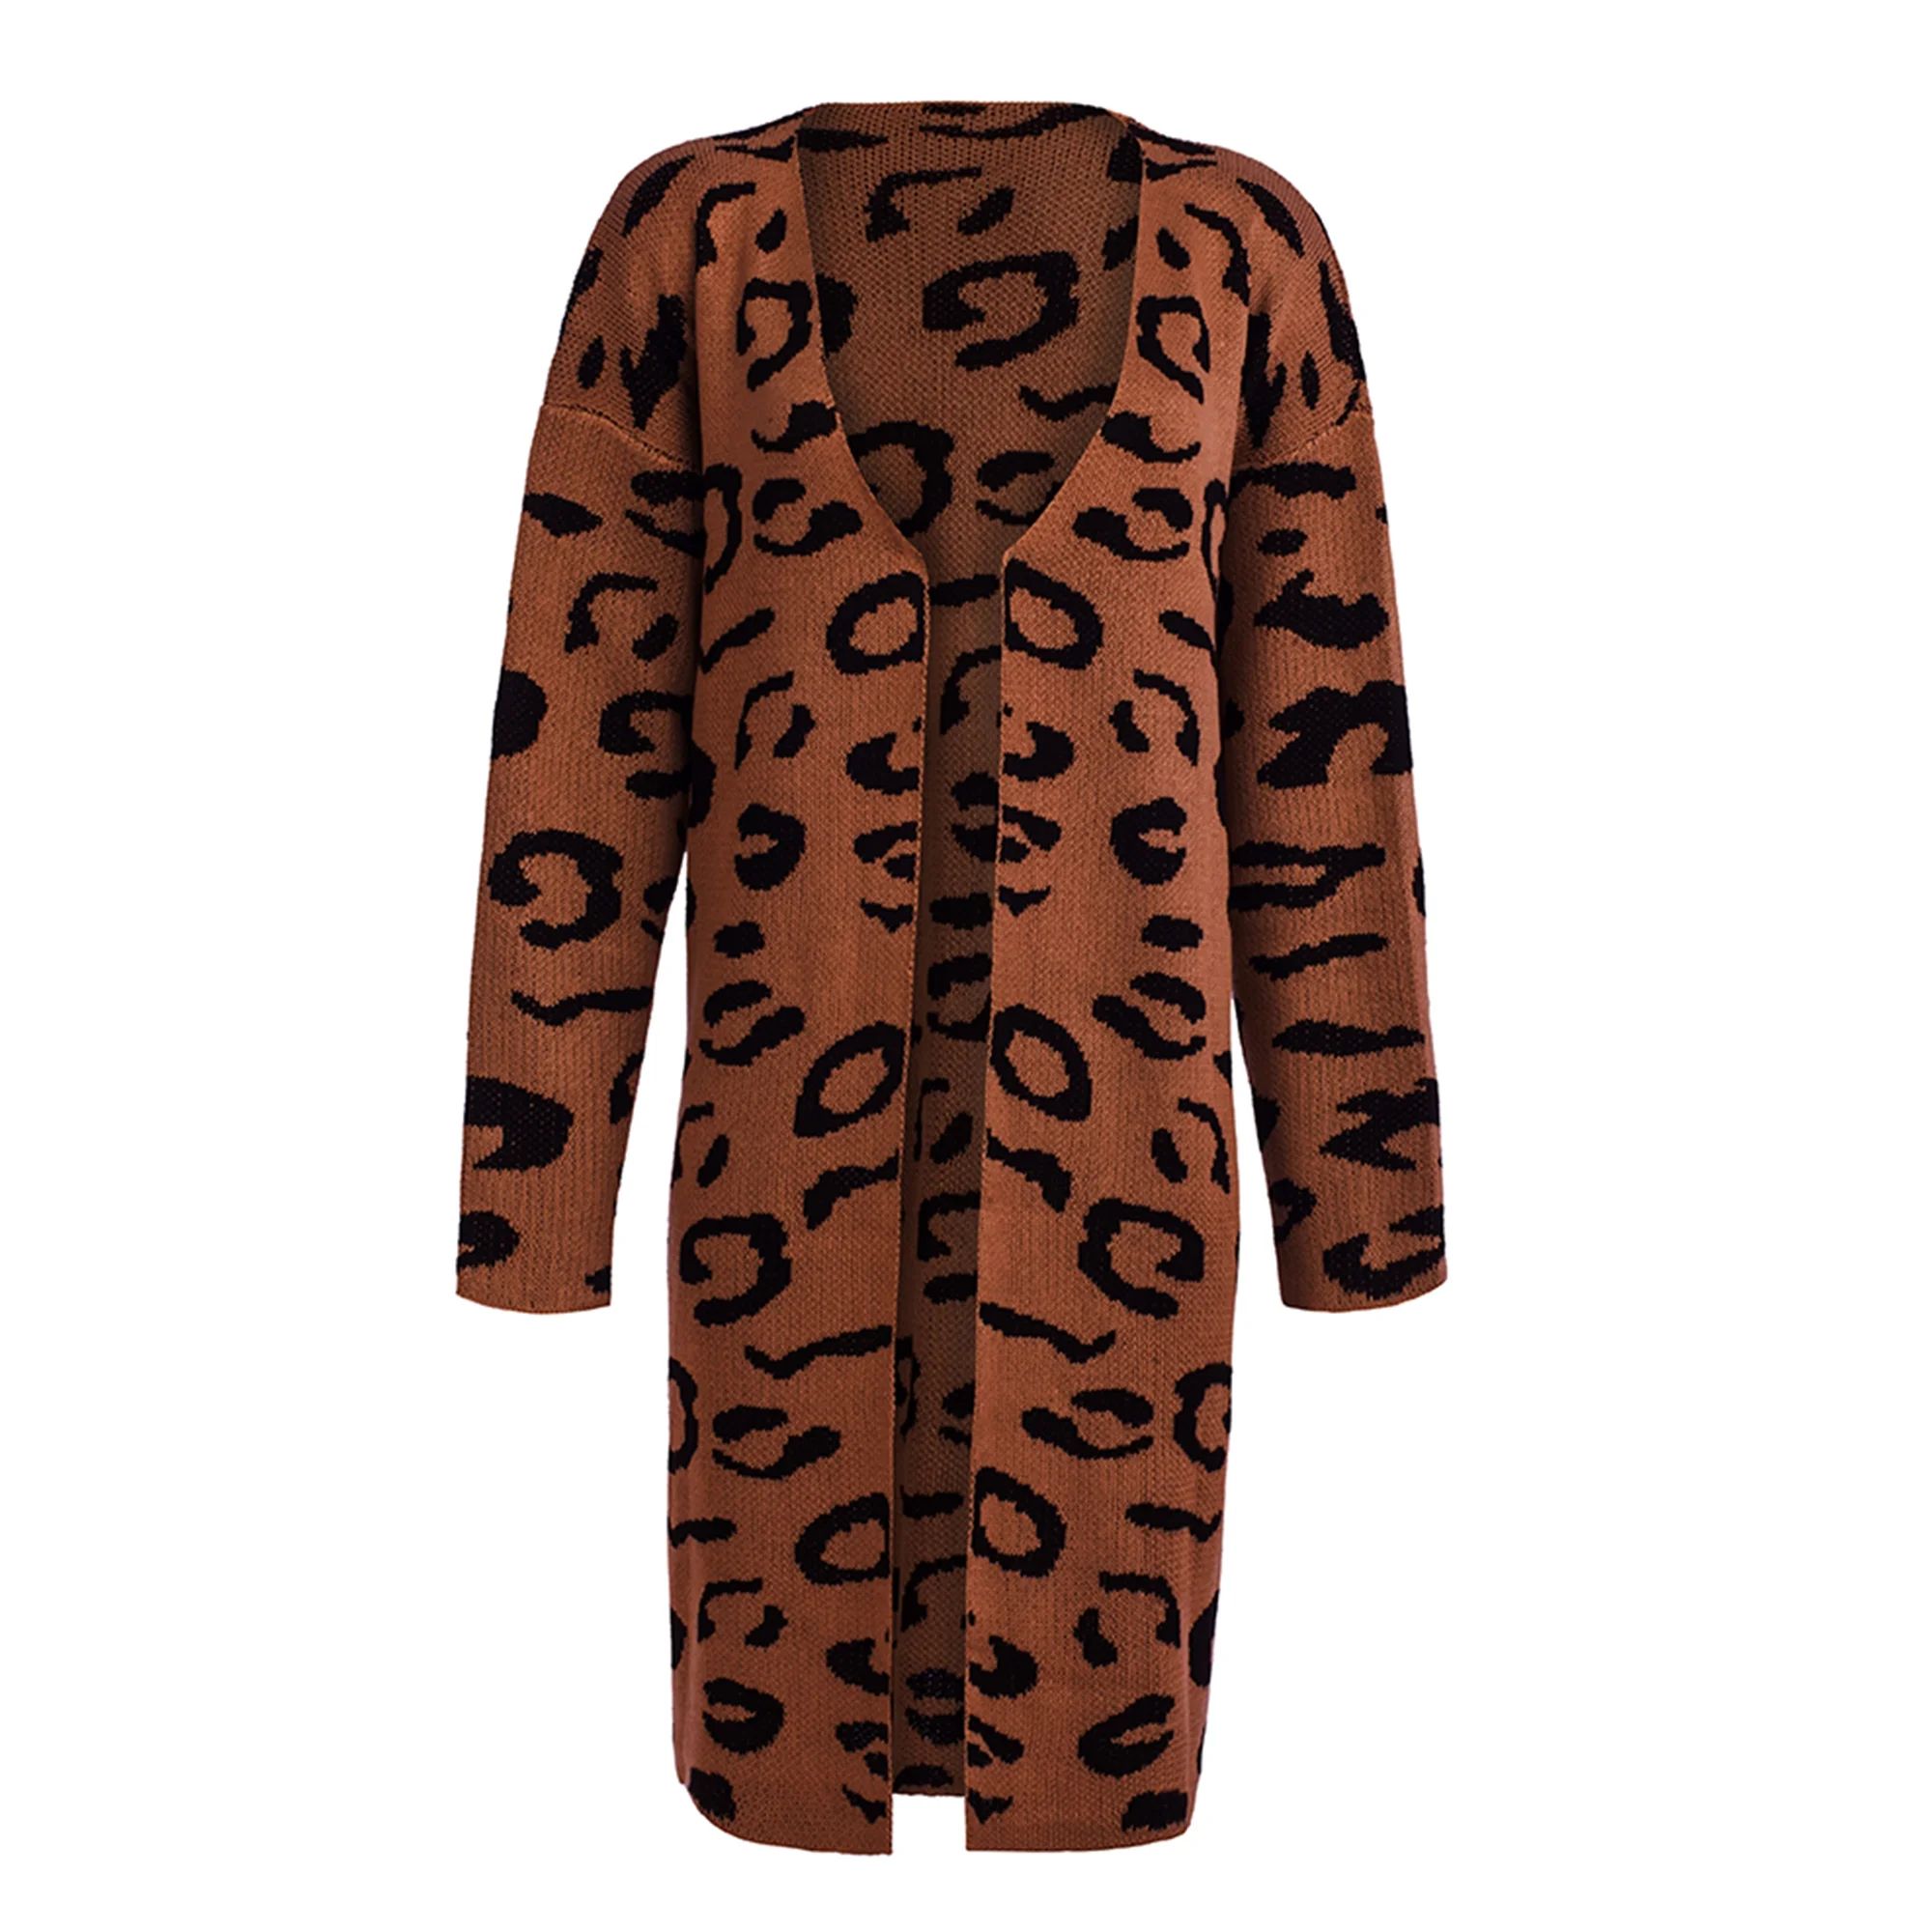 Women Leopard Print Long Sleeve Knit Cardigan Open Front Sweater Outwear Coat | Walmart (US)